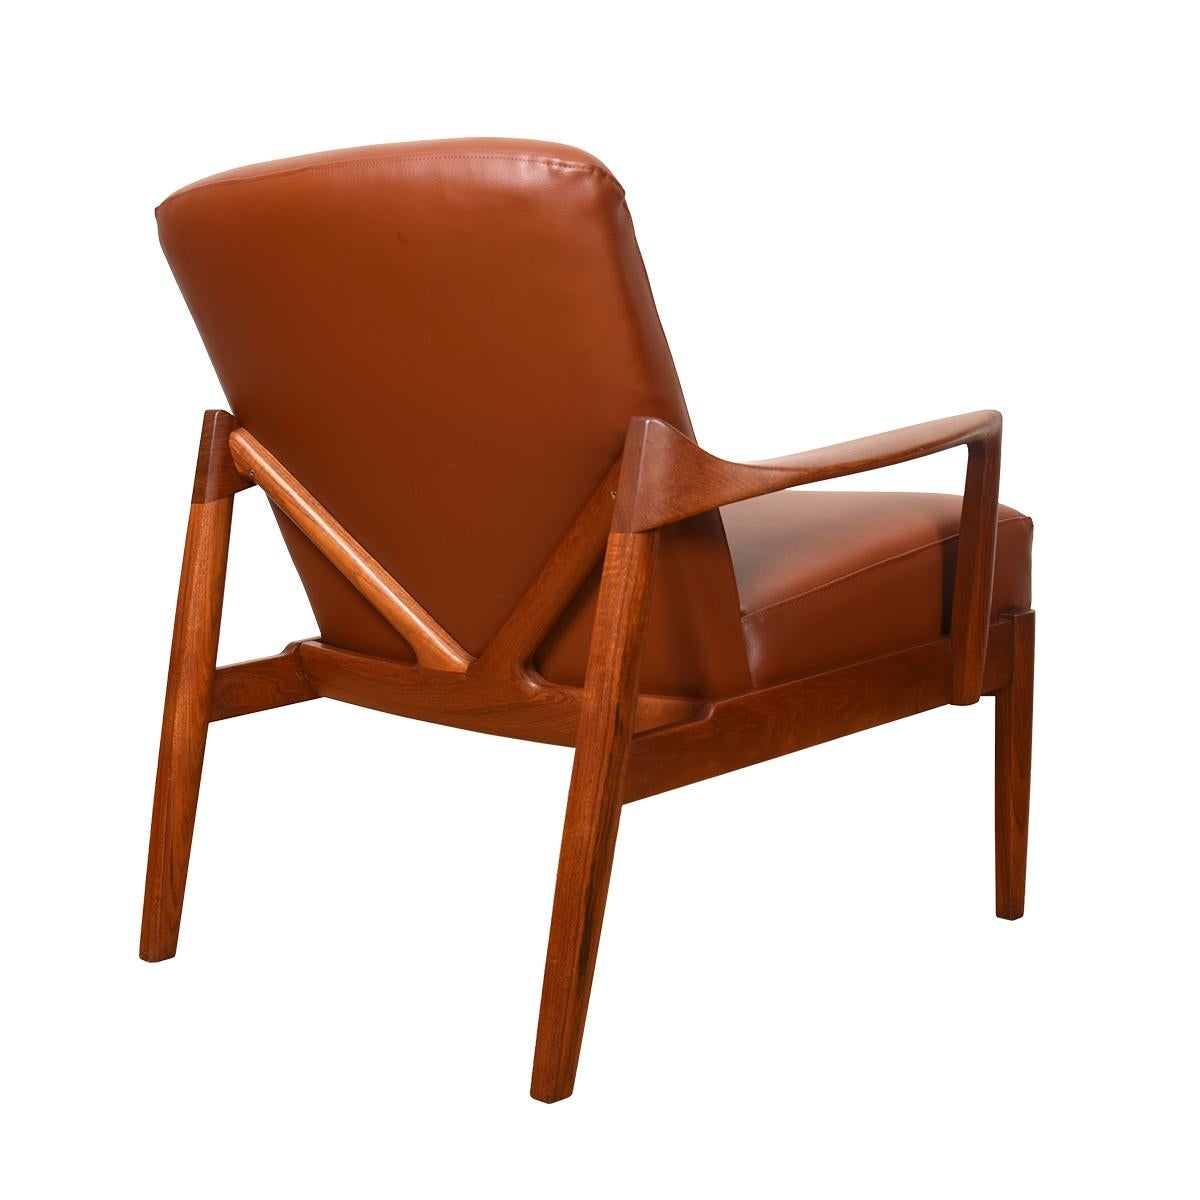  Nous avons le plaisir de proposer cette chaise spéciale de Tove & Edvard Kindt-Larsen avec un cadre en teck aussi beau de l'arrière que de l'avant.
Les accoudoirs enserrent le pied du dossier, ce qui permet d'emboîter le coussin du dossier dans le